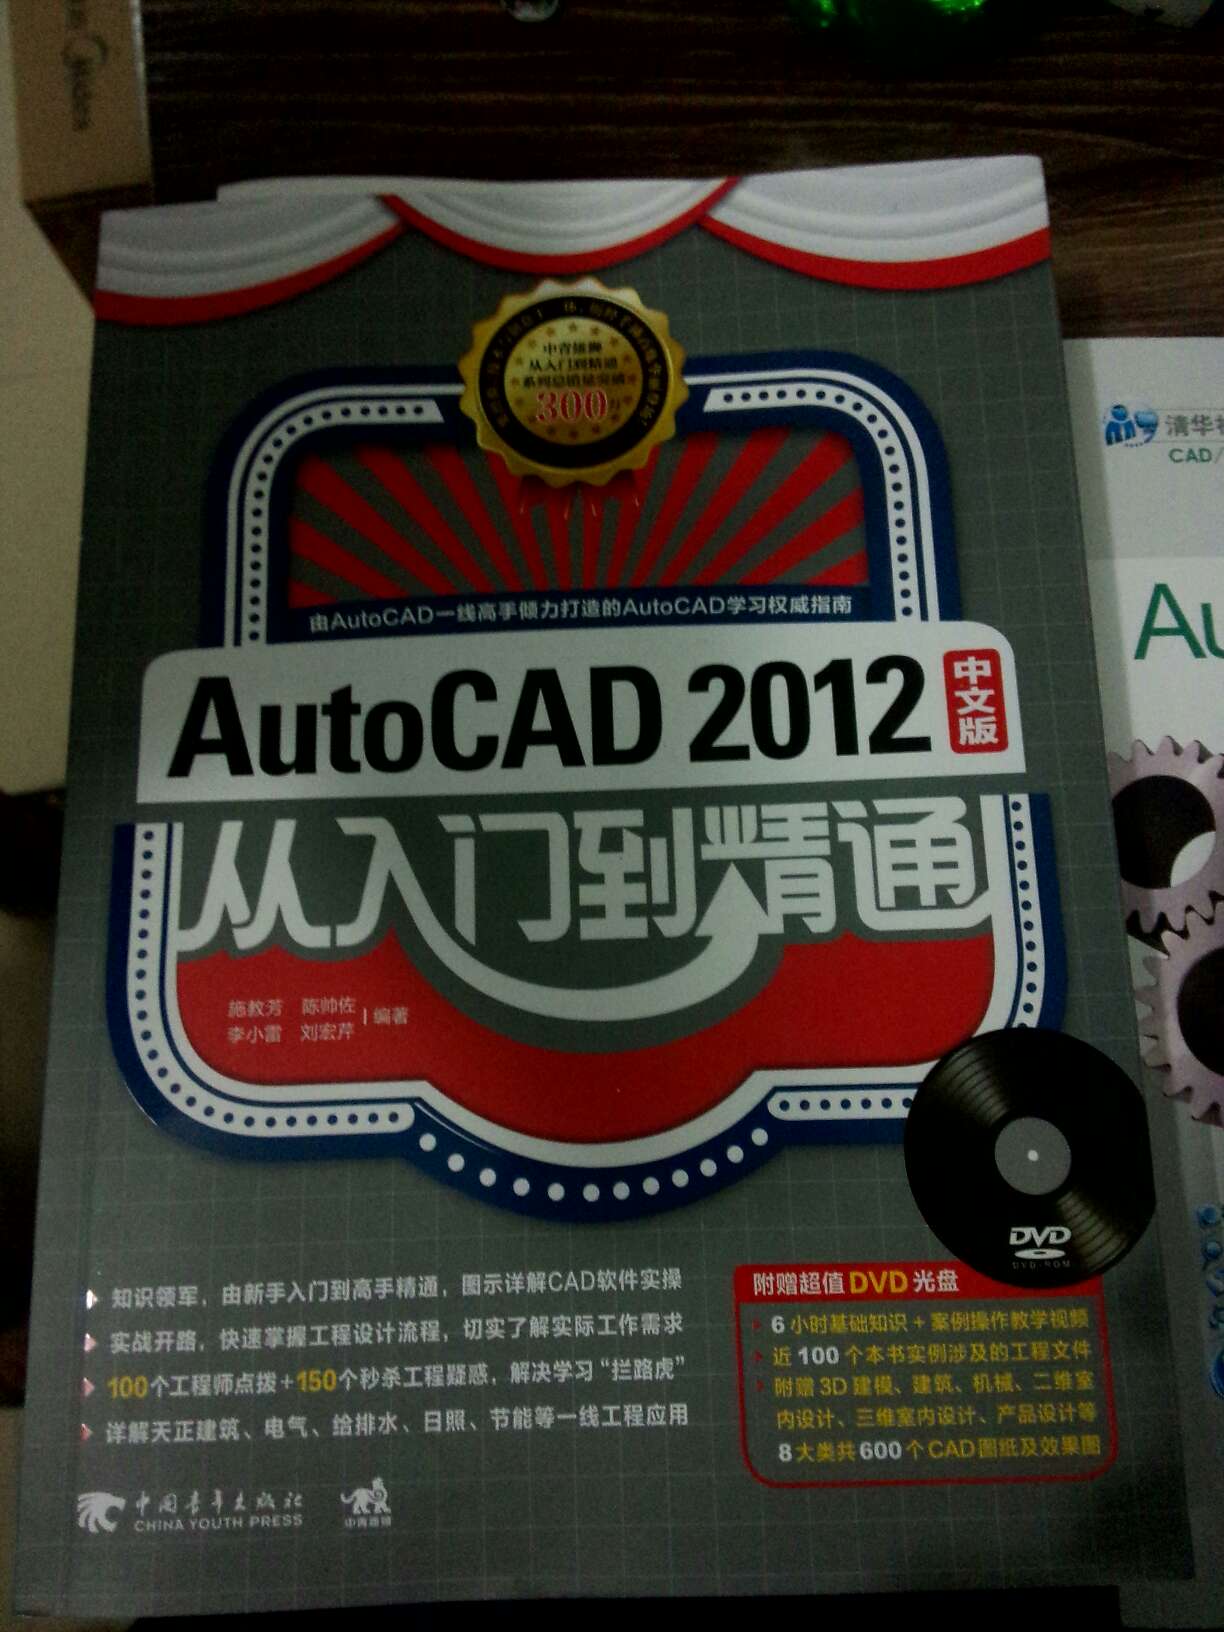 AutoCAD2012    已收到     希望有用   自学CAD   加油！